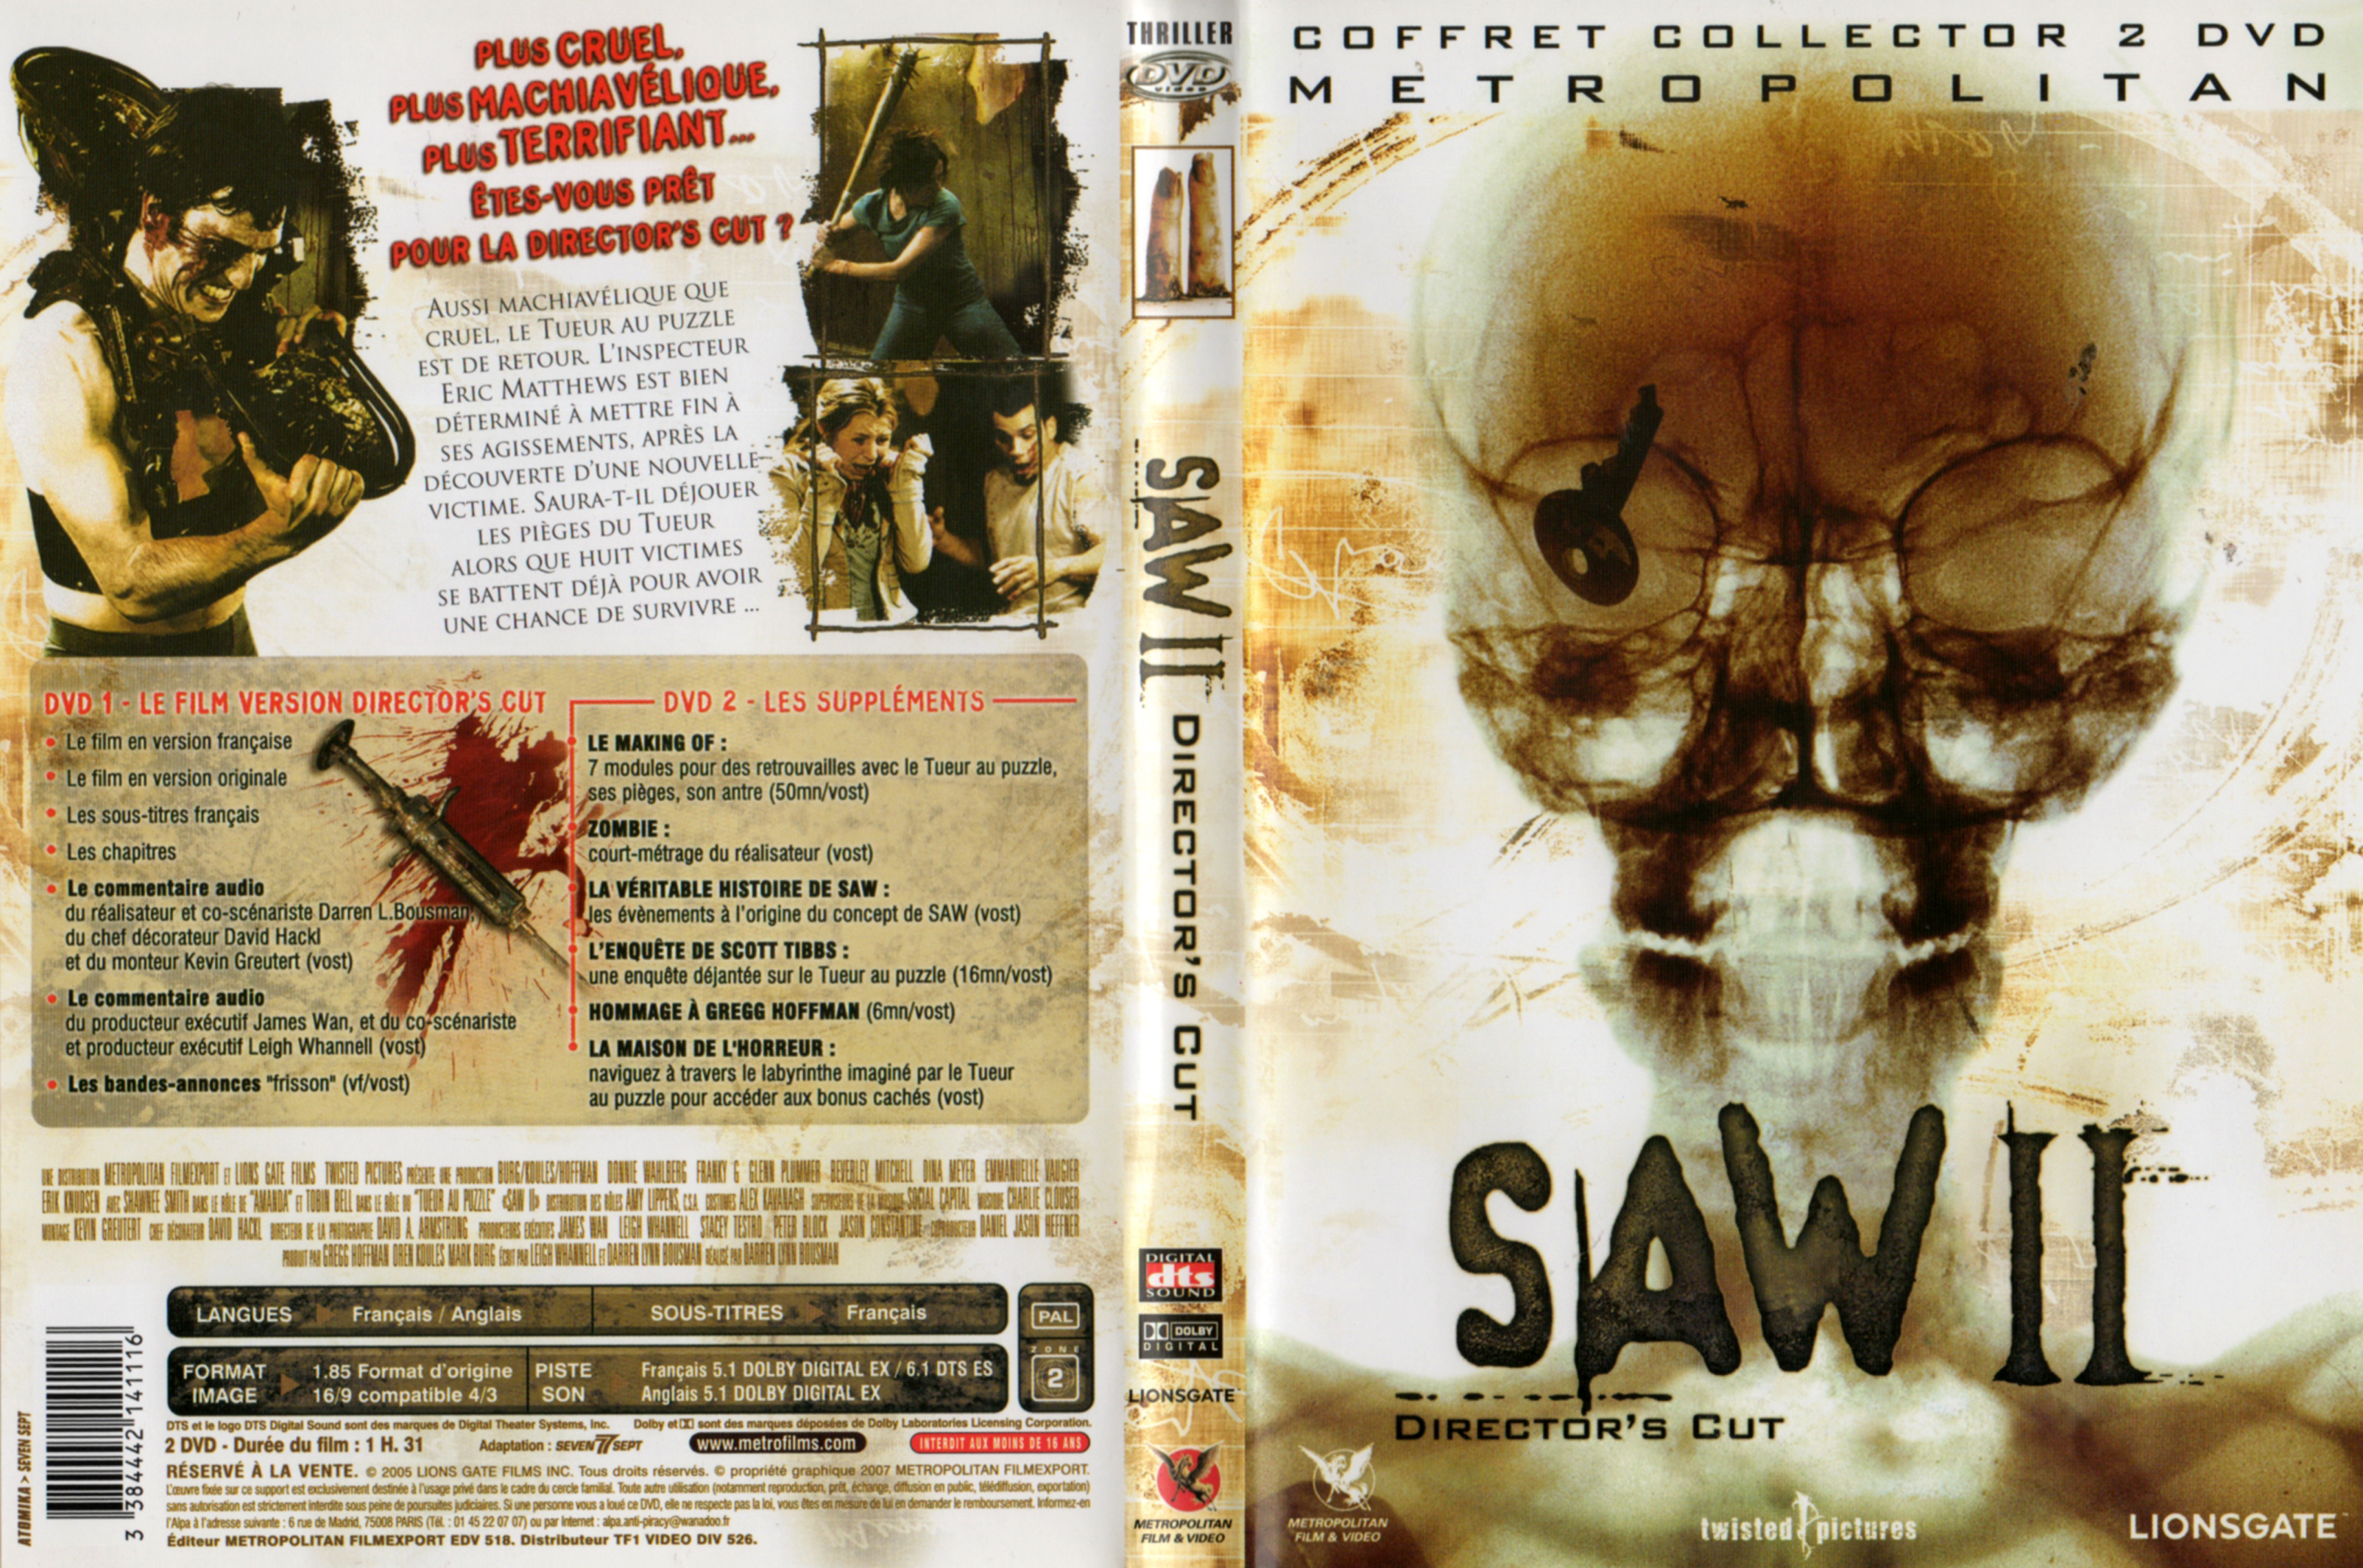 Jaquette DVD Saw 2 v4